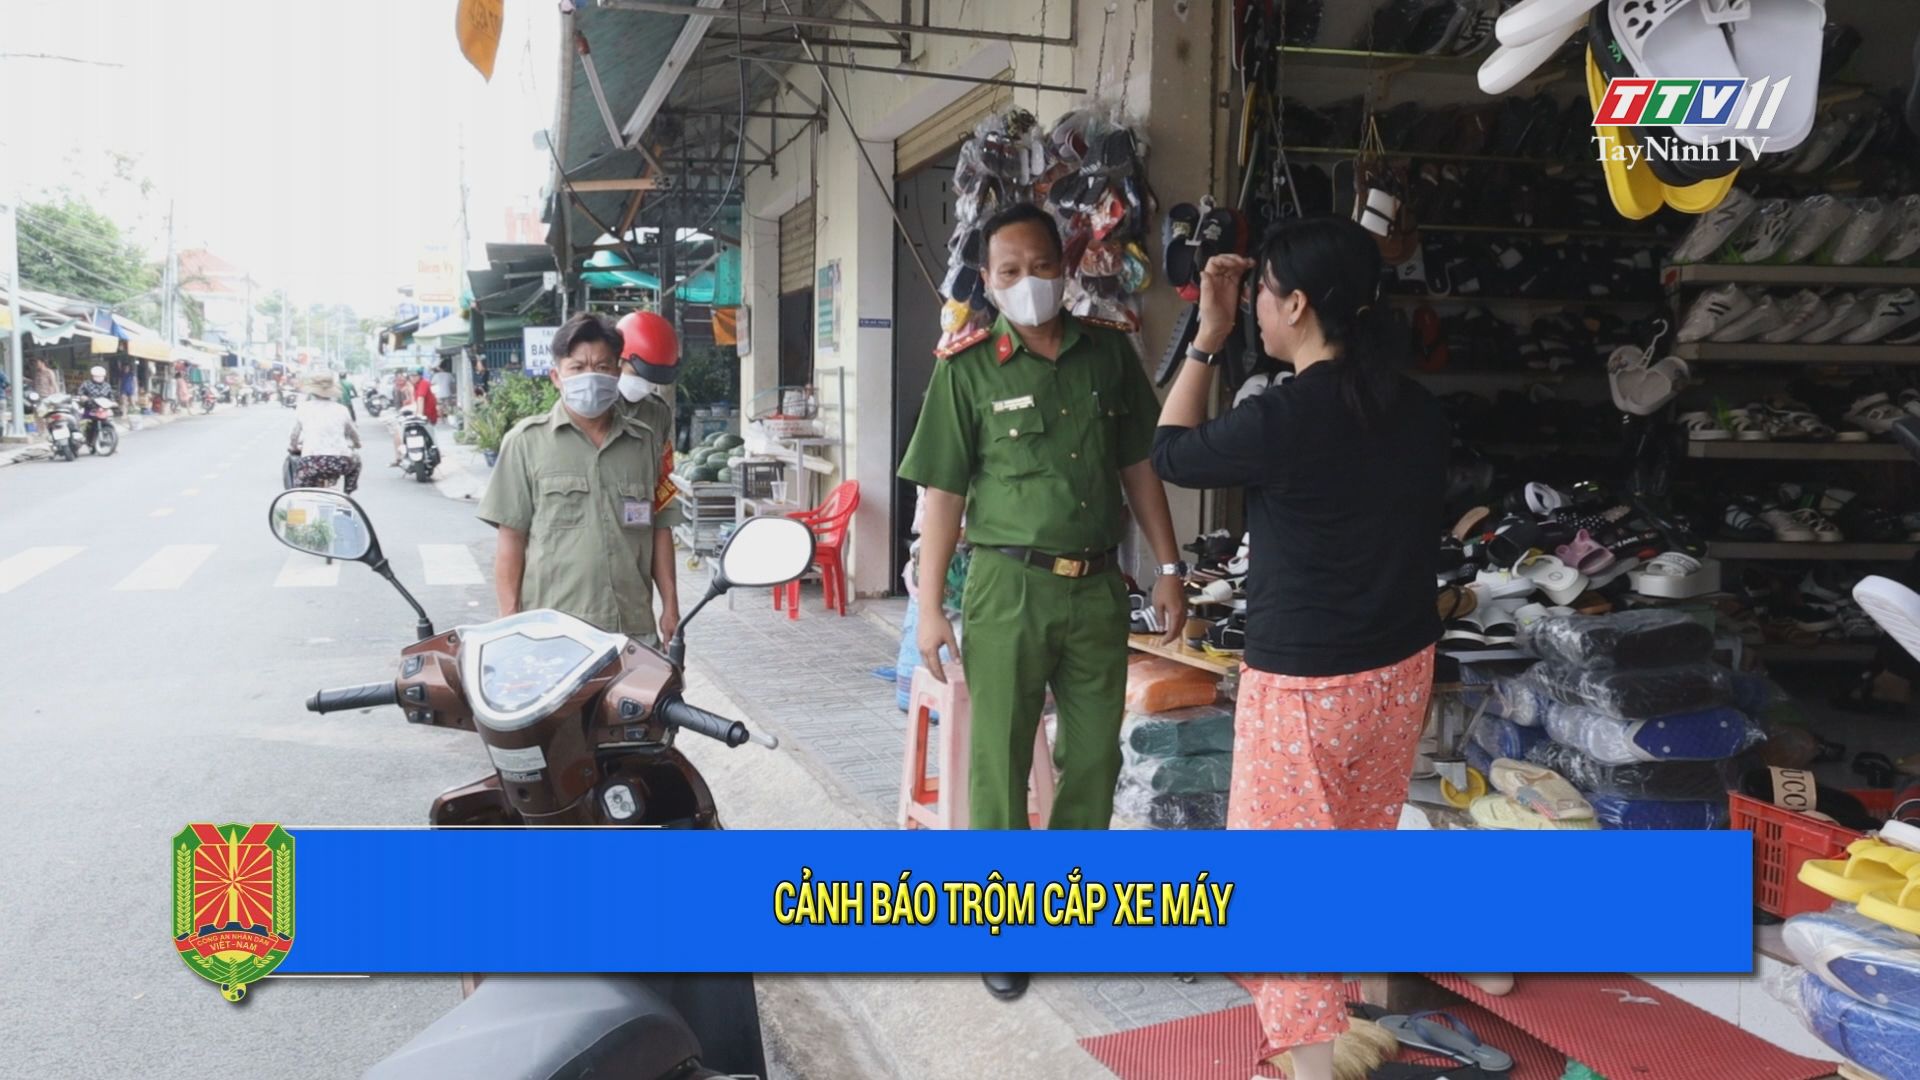 Cảnh báo tội phạm trộ,m c,ắp xe máy | An ninh Tây Ninh | TayNinhTV